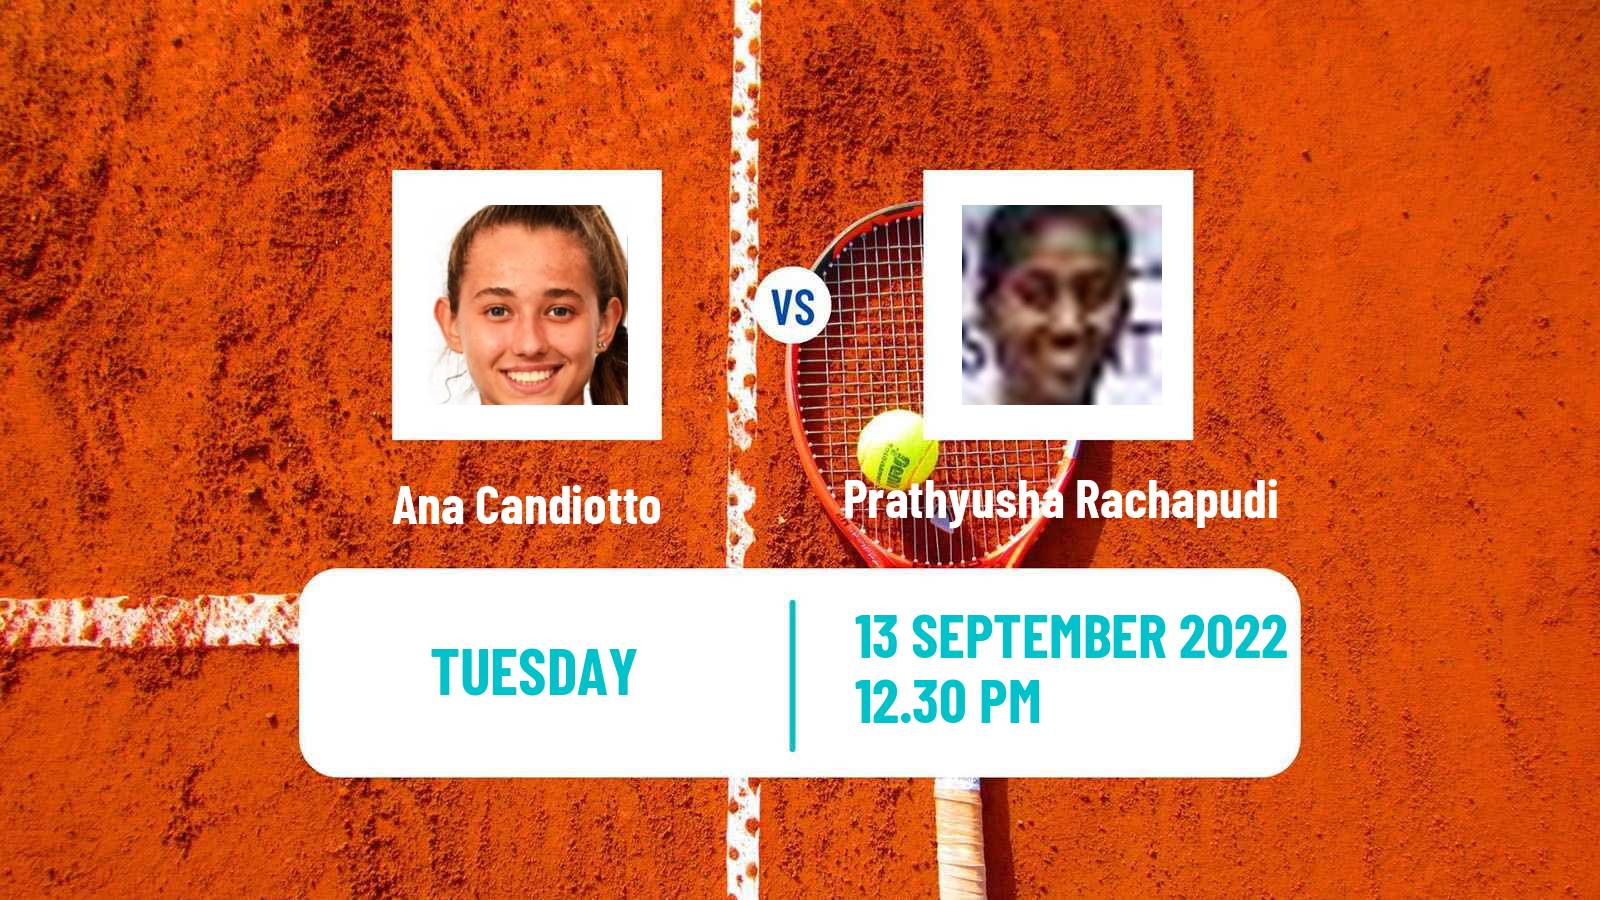 Tennis ITF Tournaments Ana Candiotto - Prathyusha Rachapudi